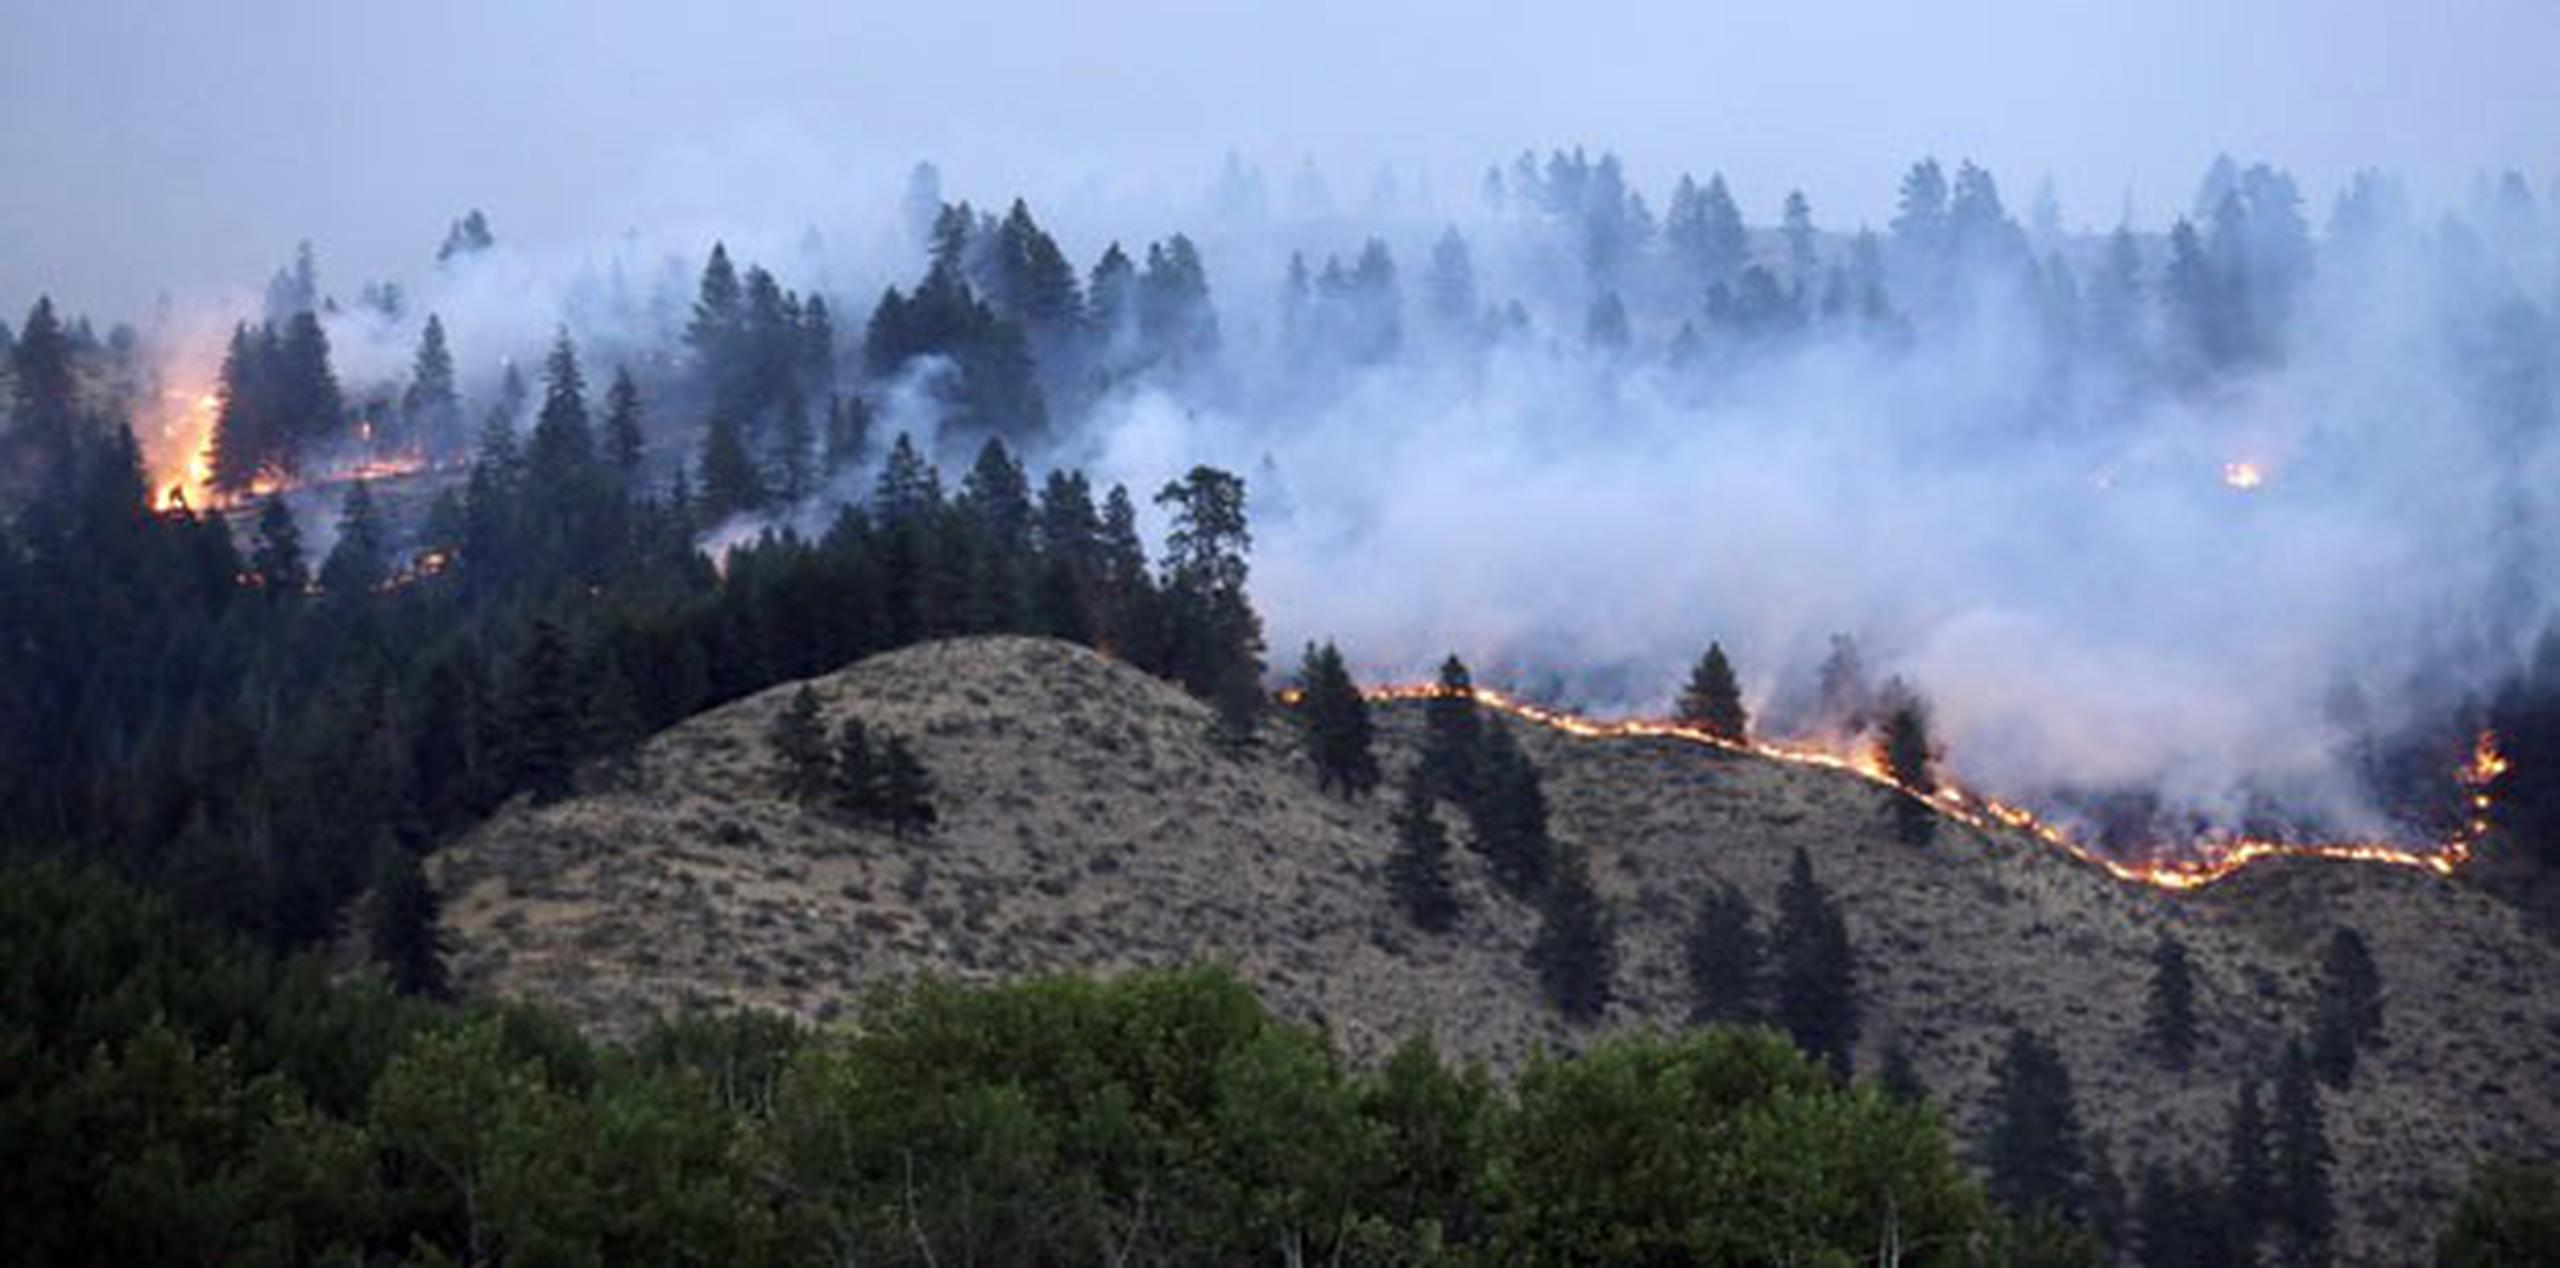 Hay unos 50 incendios activos en Washington, según el gobernador del estado, debido a una combinación de clima húmedo y seco, fuertes vientos y rayos. (AP Photo/Elaine Thompson)